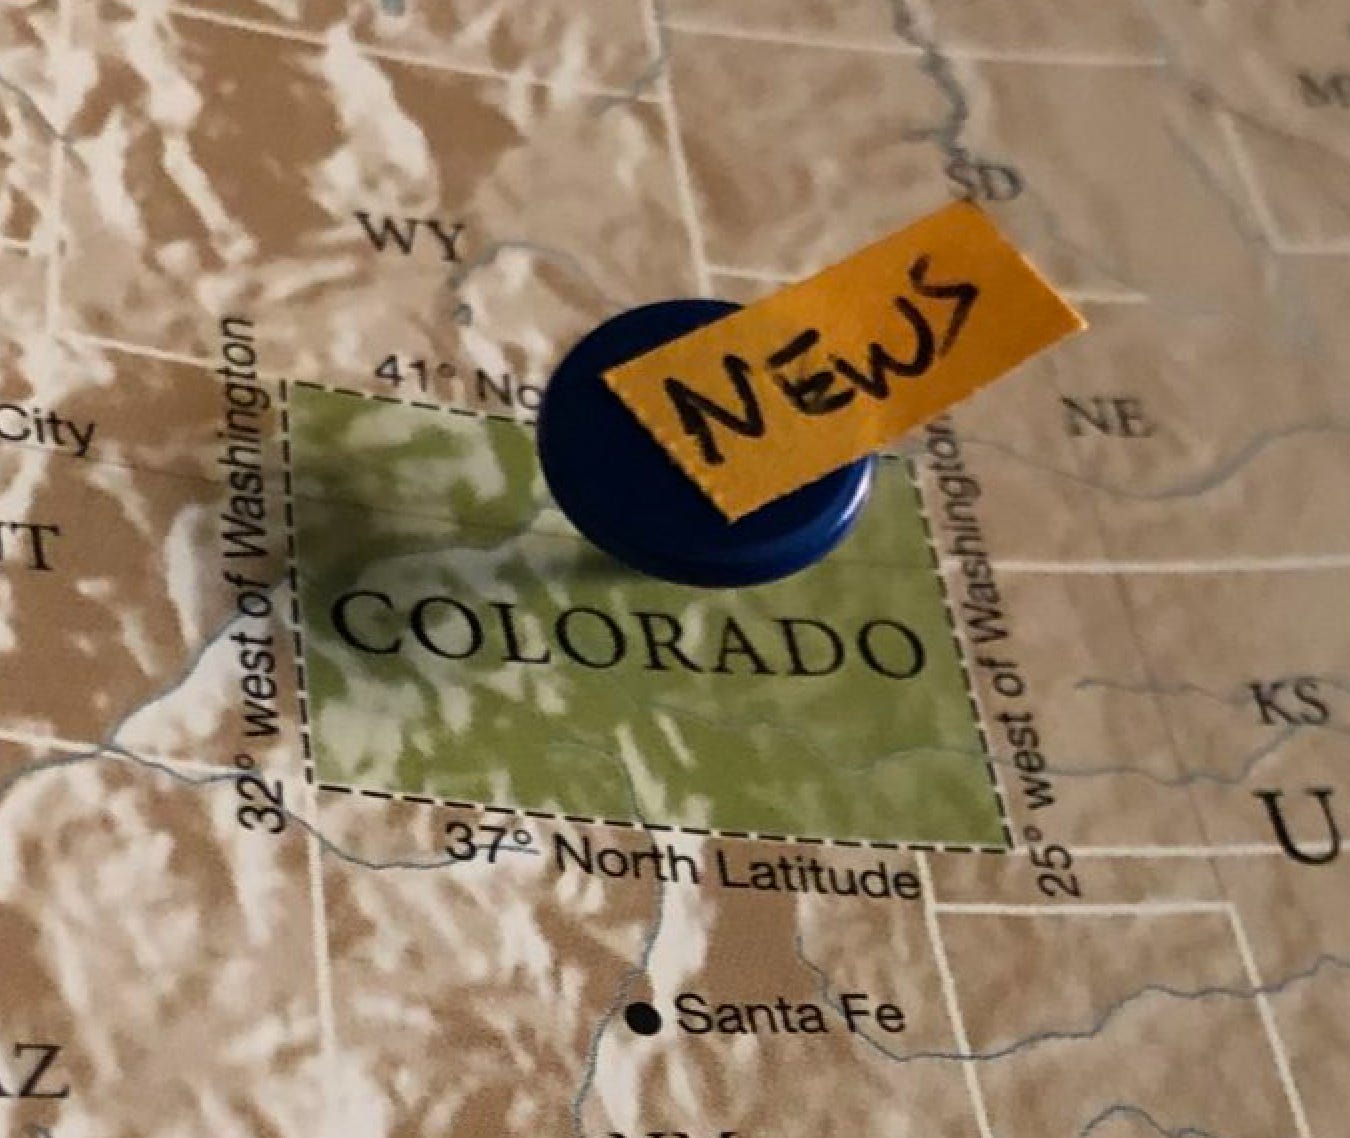 Colorado Rockies Racial Slur Dinger Controversy Update